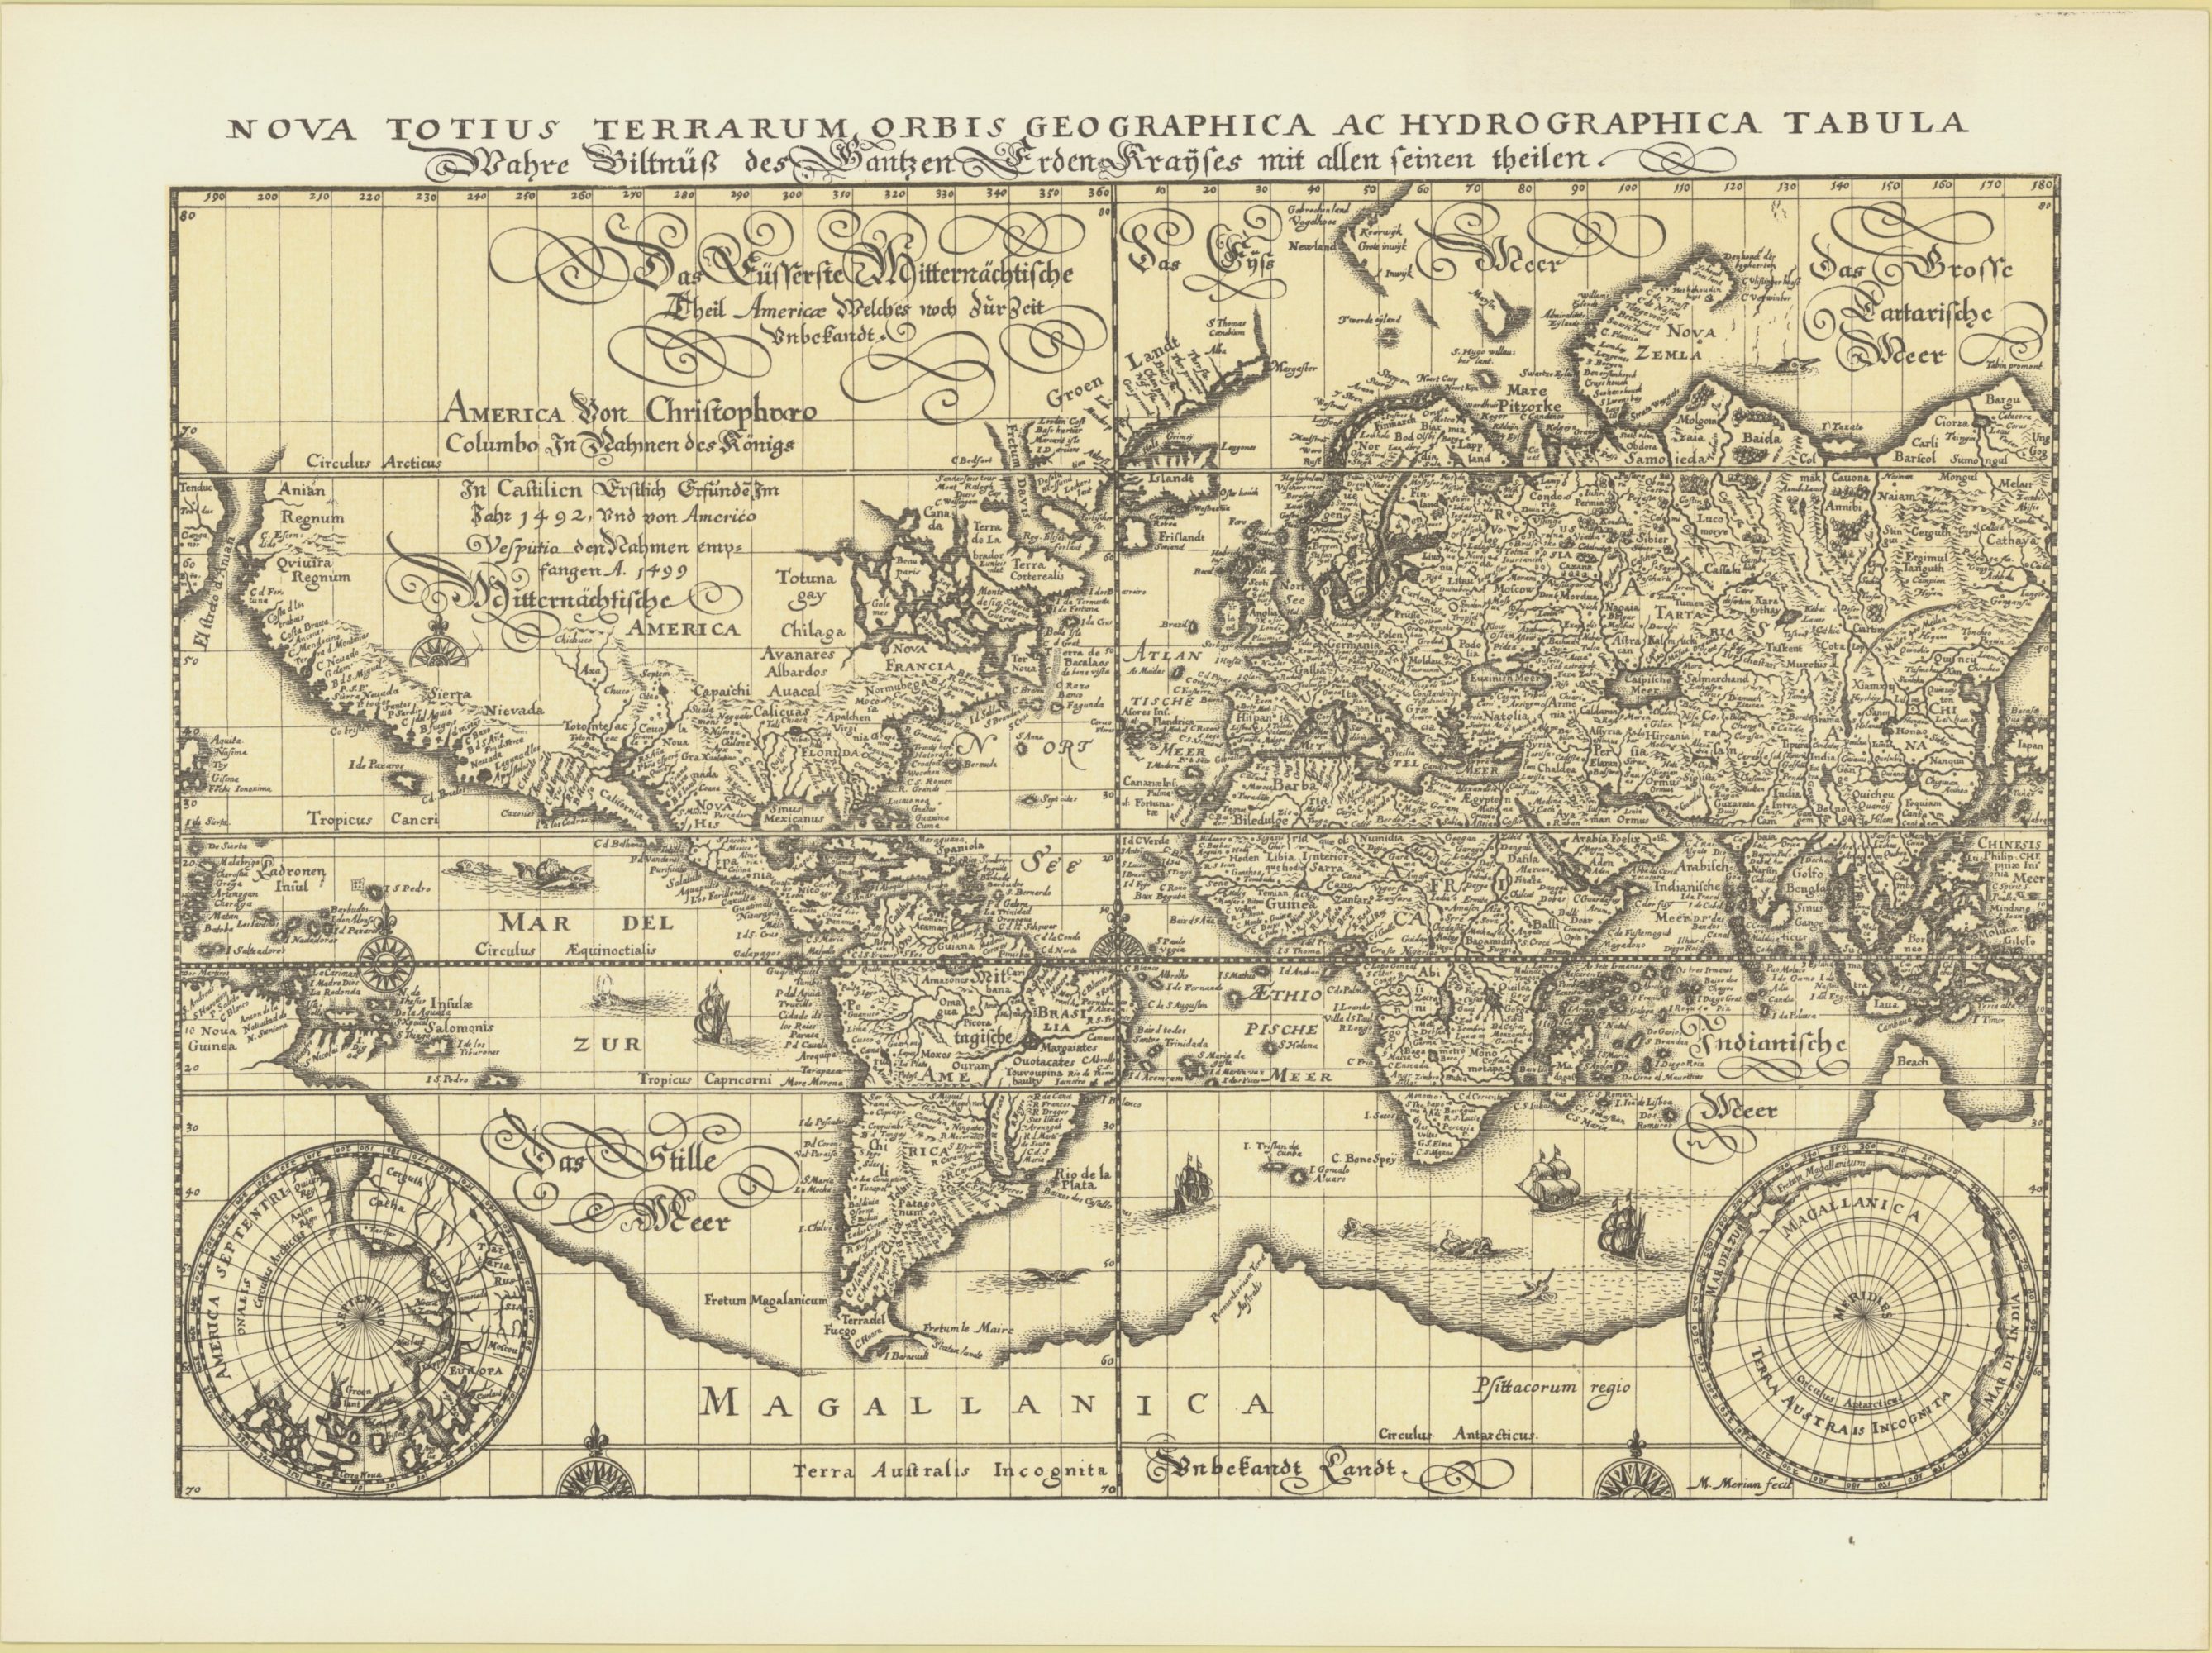 1648 map of the world by Matthaus Merian